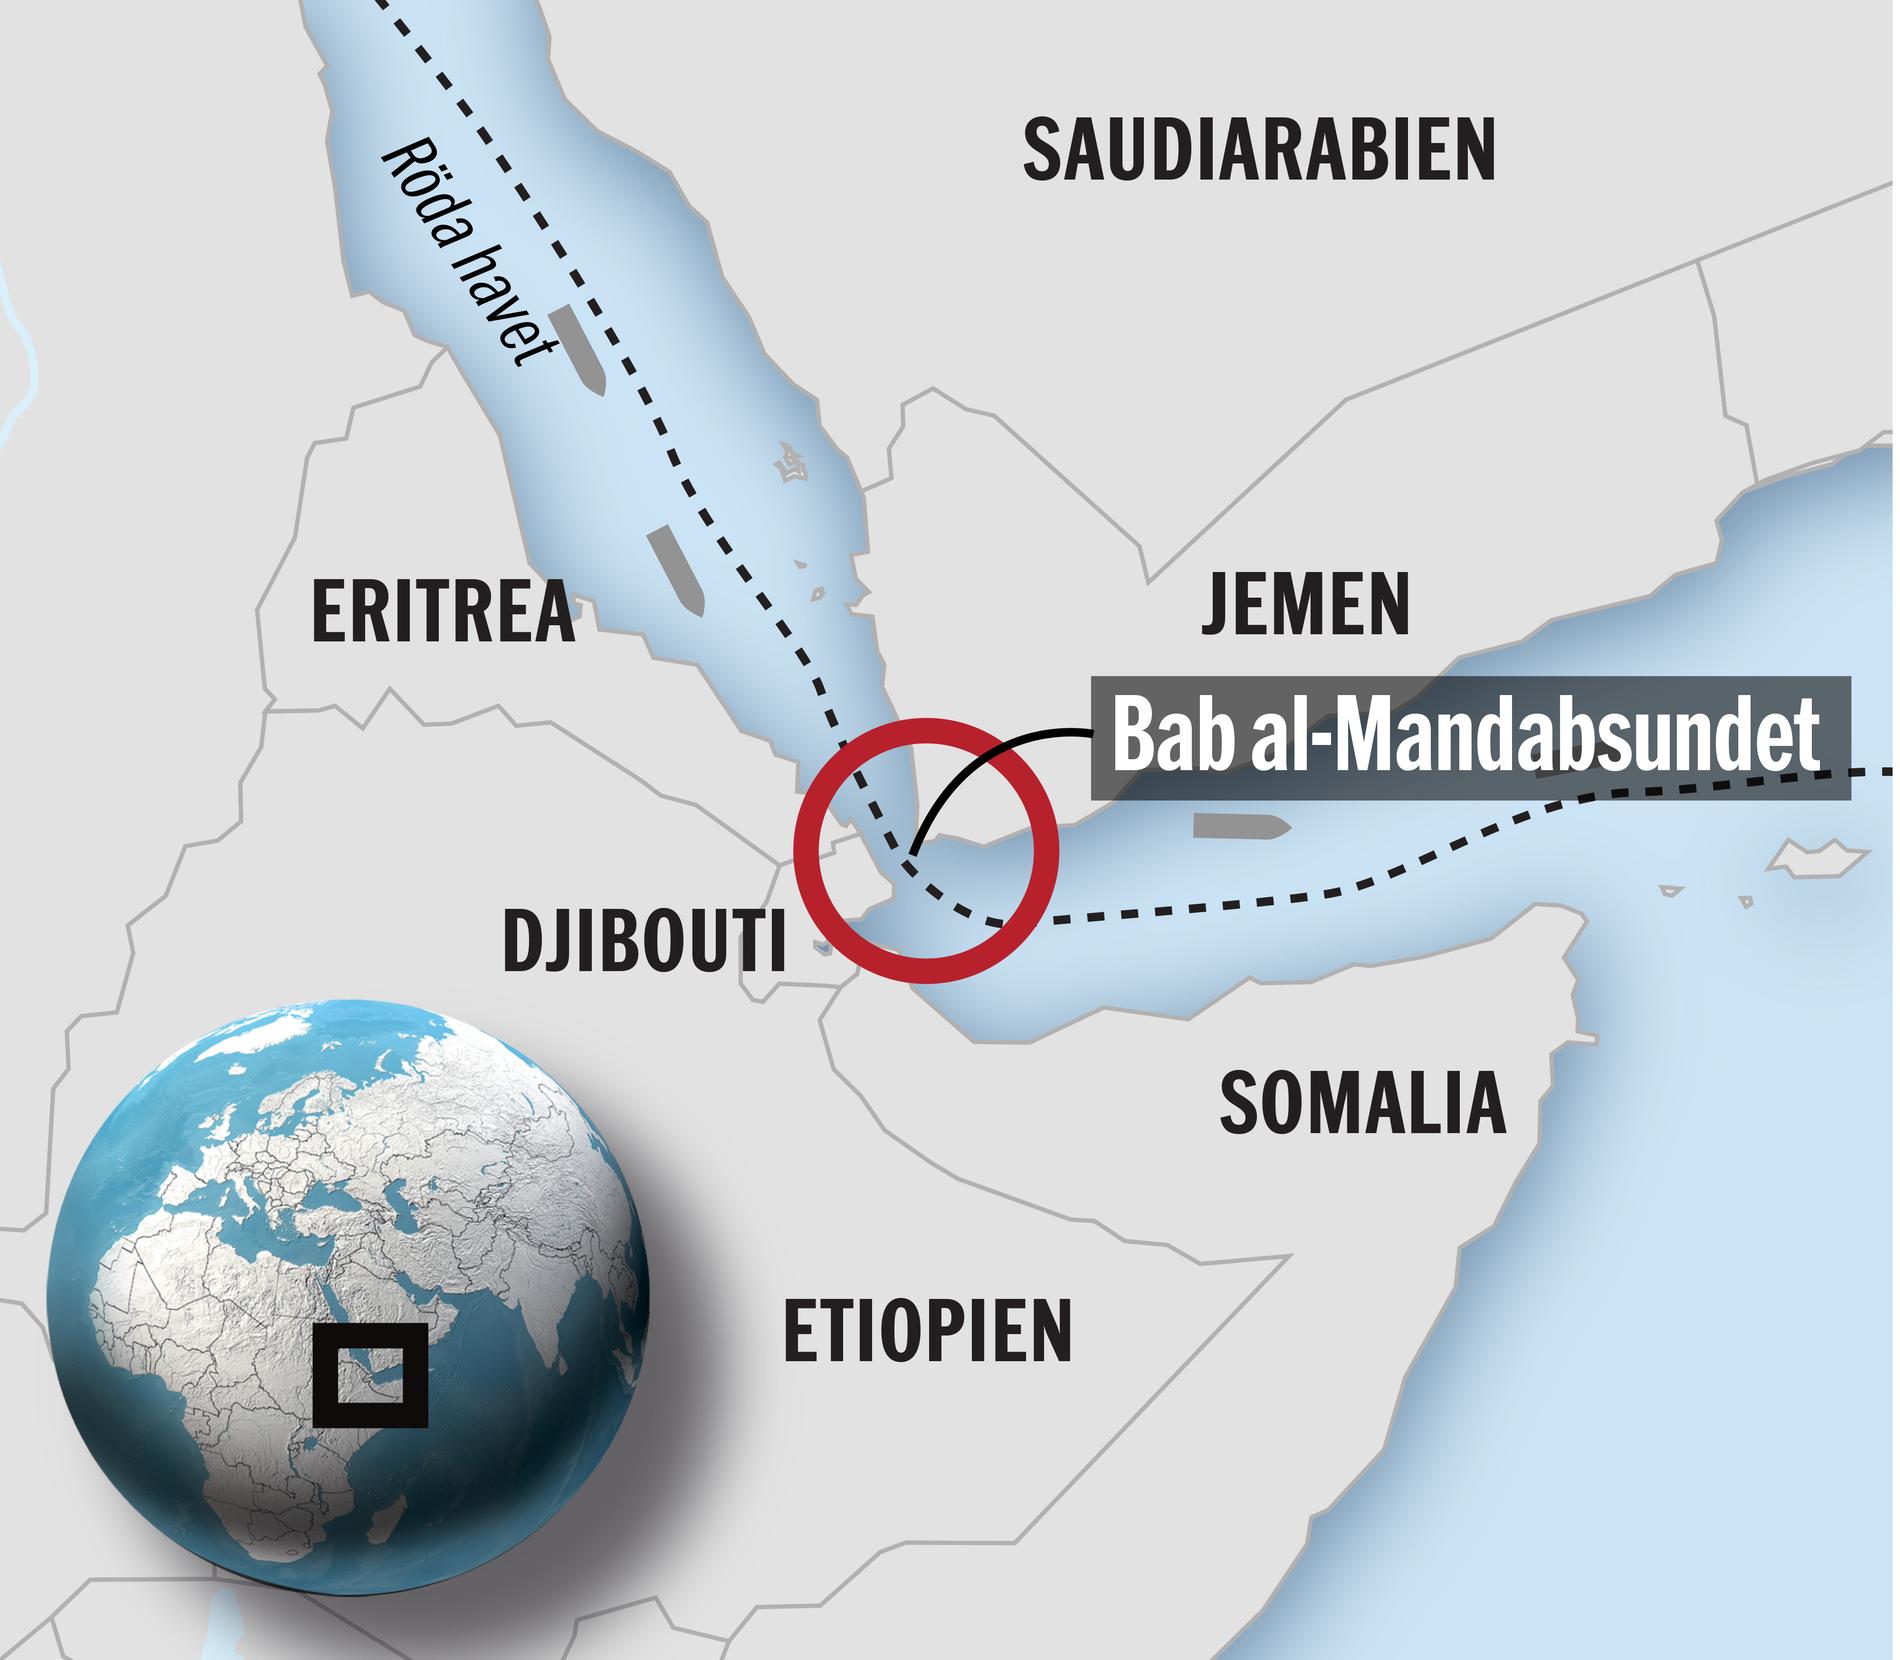 I det här området, i Röda havet och Adenviken, har fraktfartyg blivit attackerade på väg till eller från Suezkanalen. Den mest utsatta platsen är det trånga Bab al-Mandabsundet mellan Djibouti och Jemen.